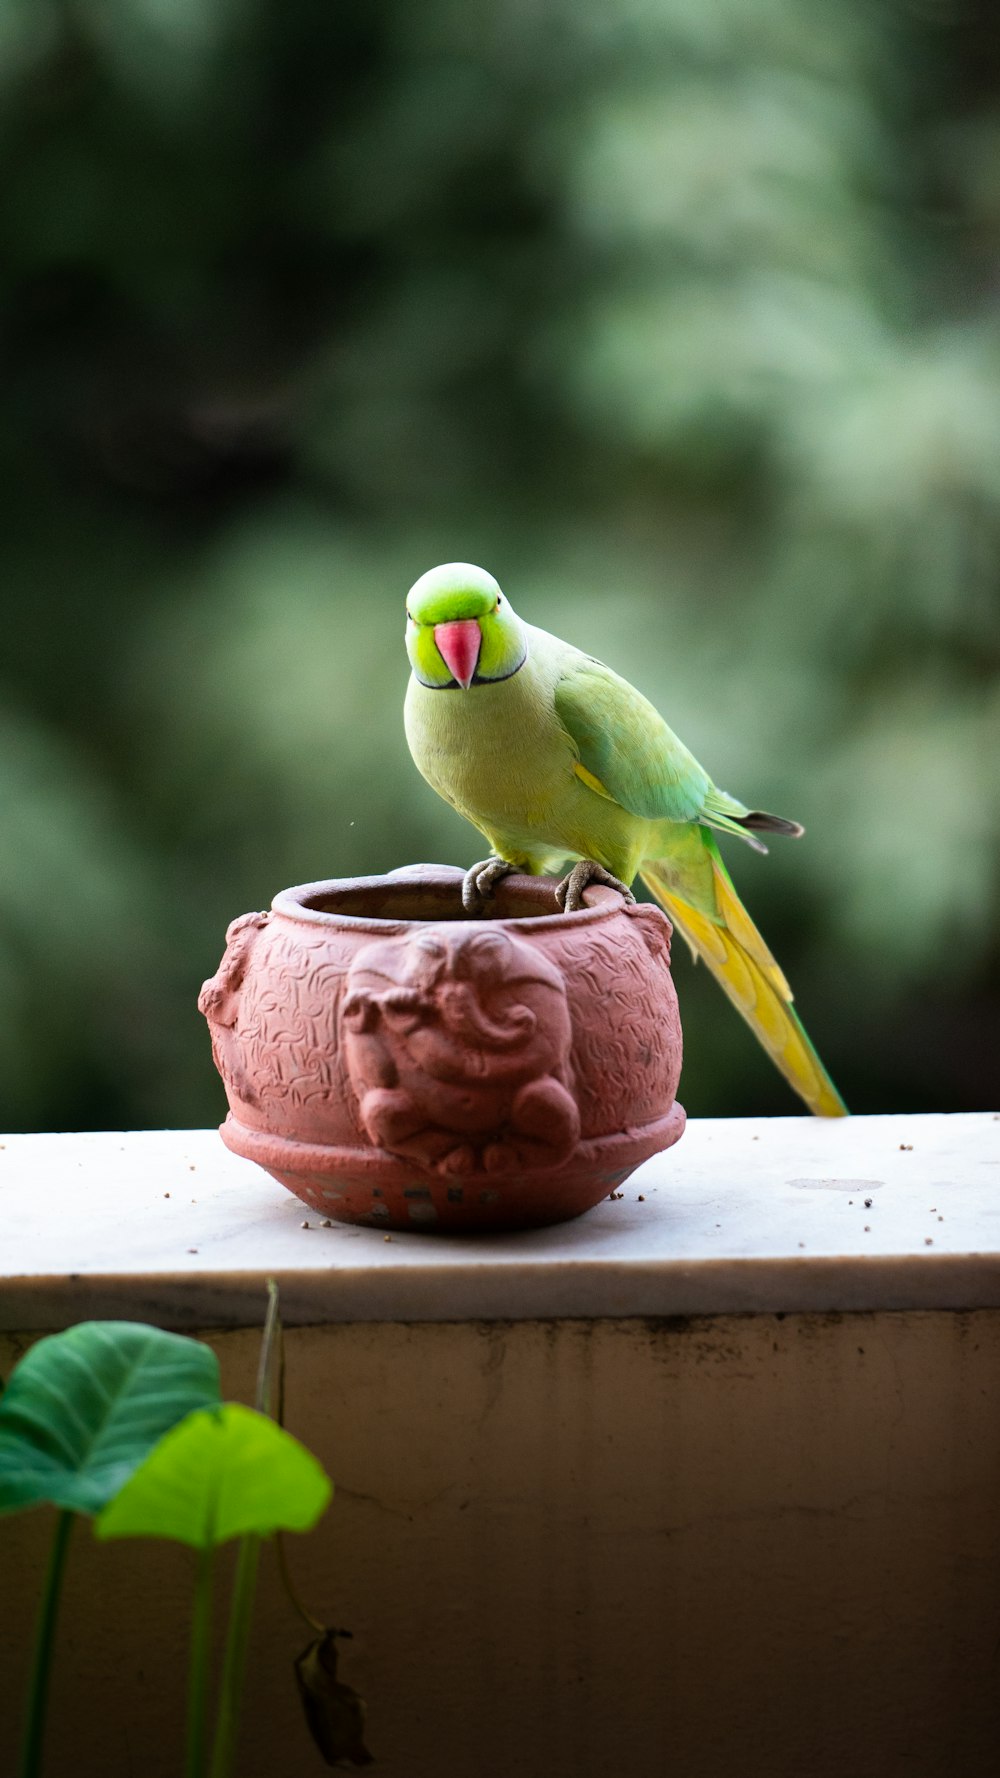 Un oiseau vert assis sur un pot d’argile